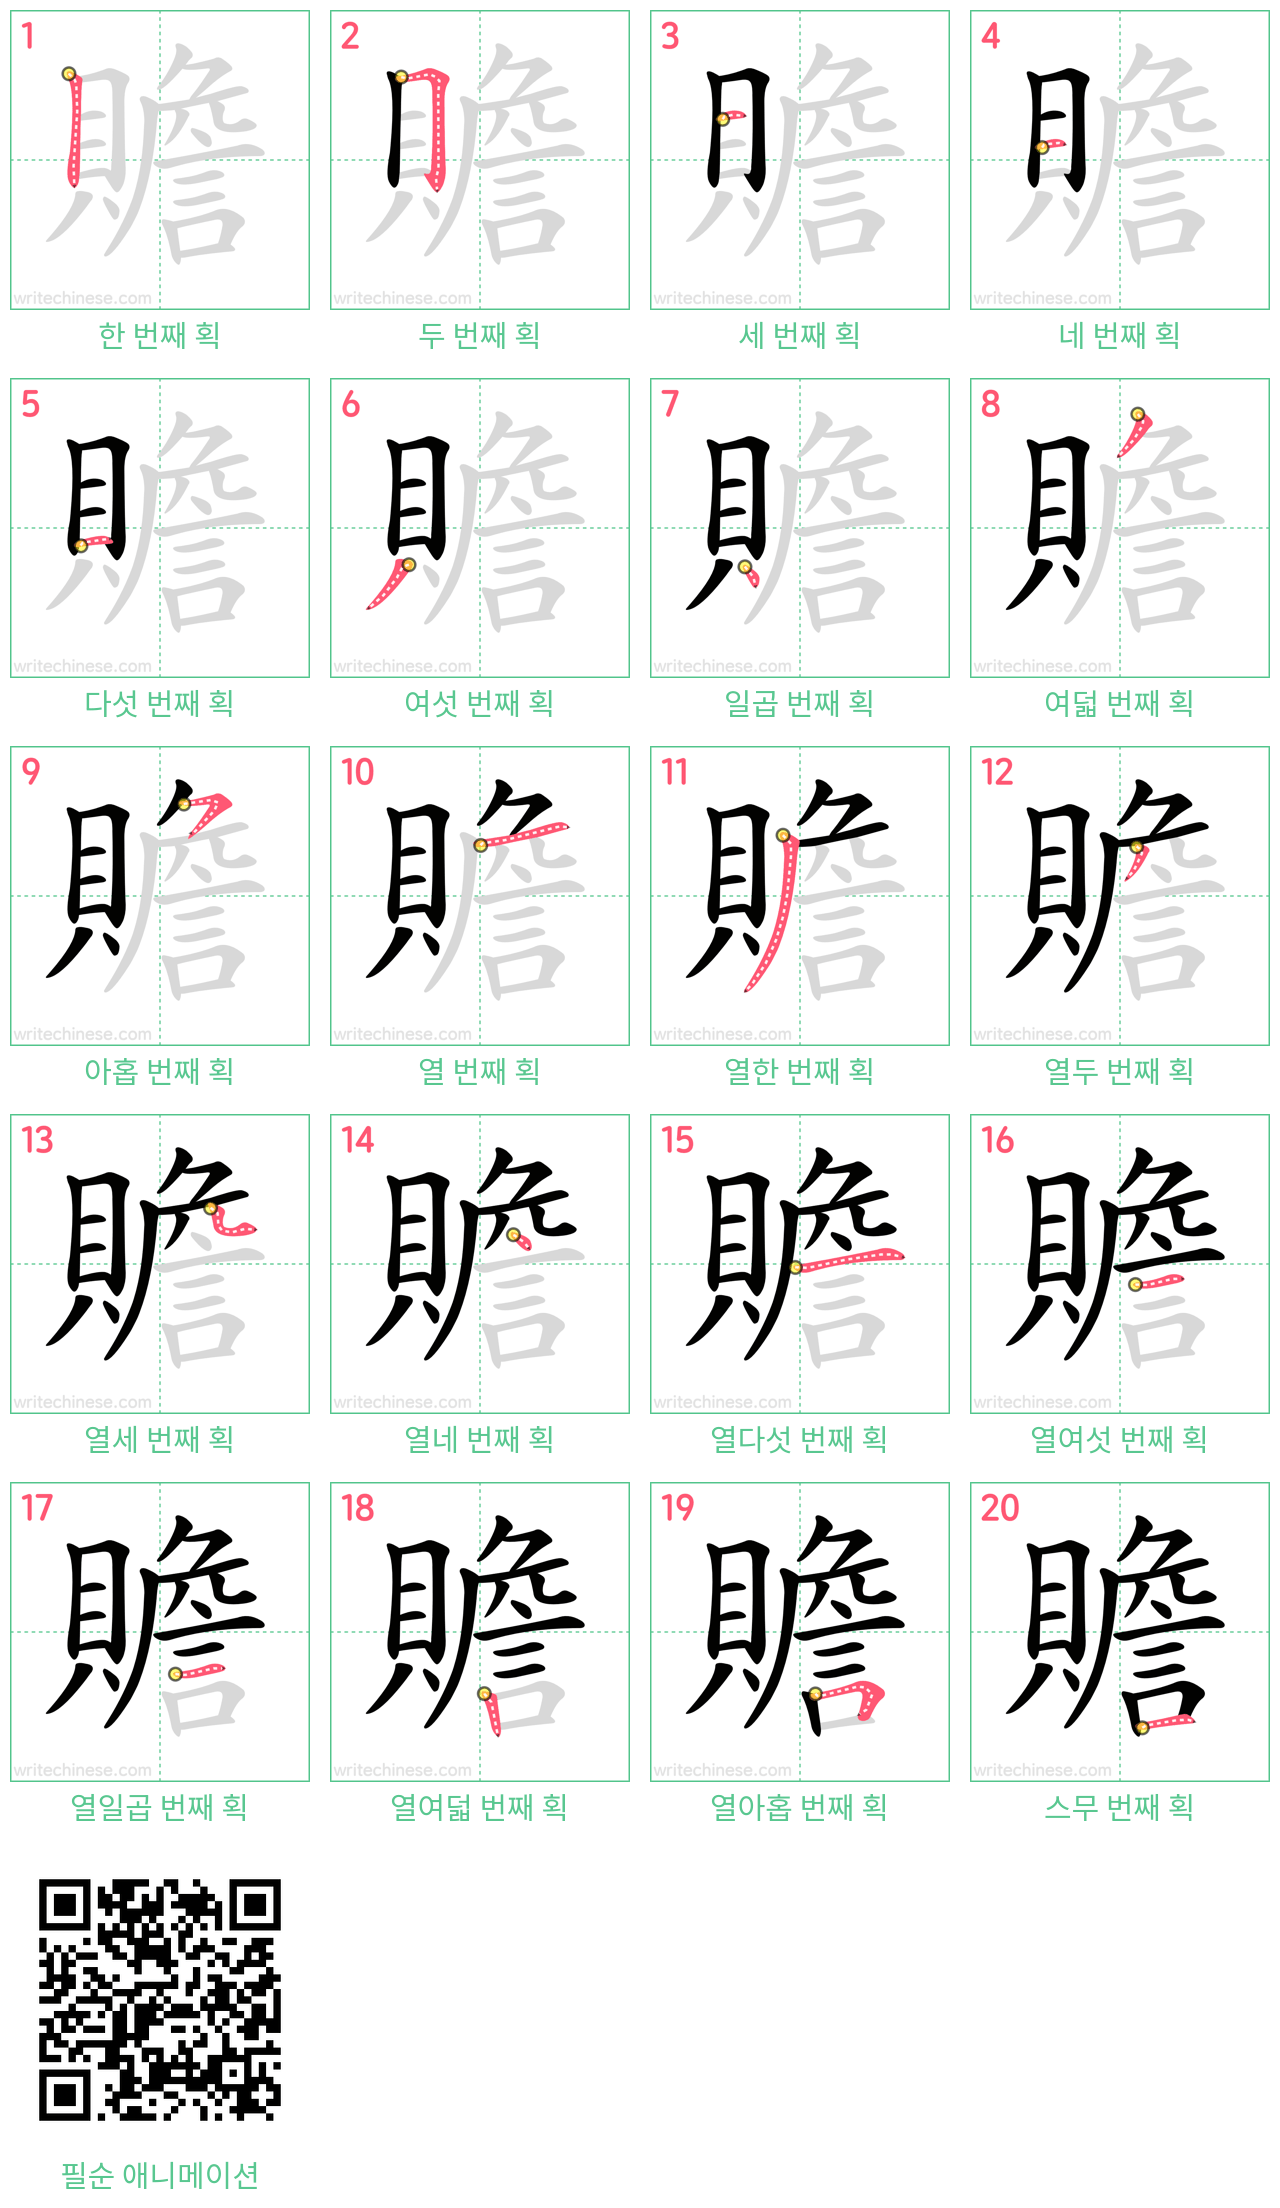 贍 step-by-step stroke order diagrams